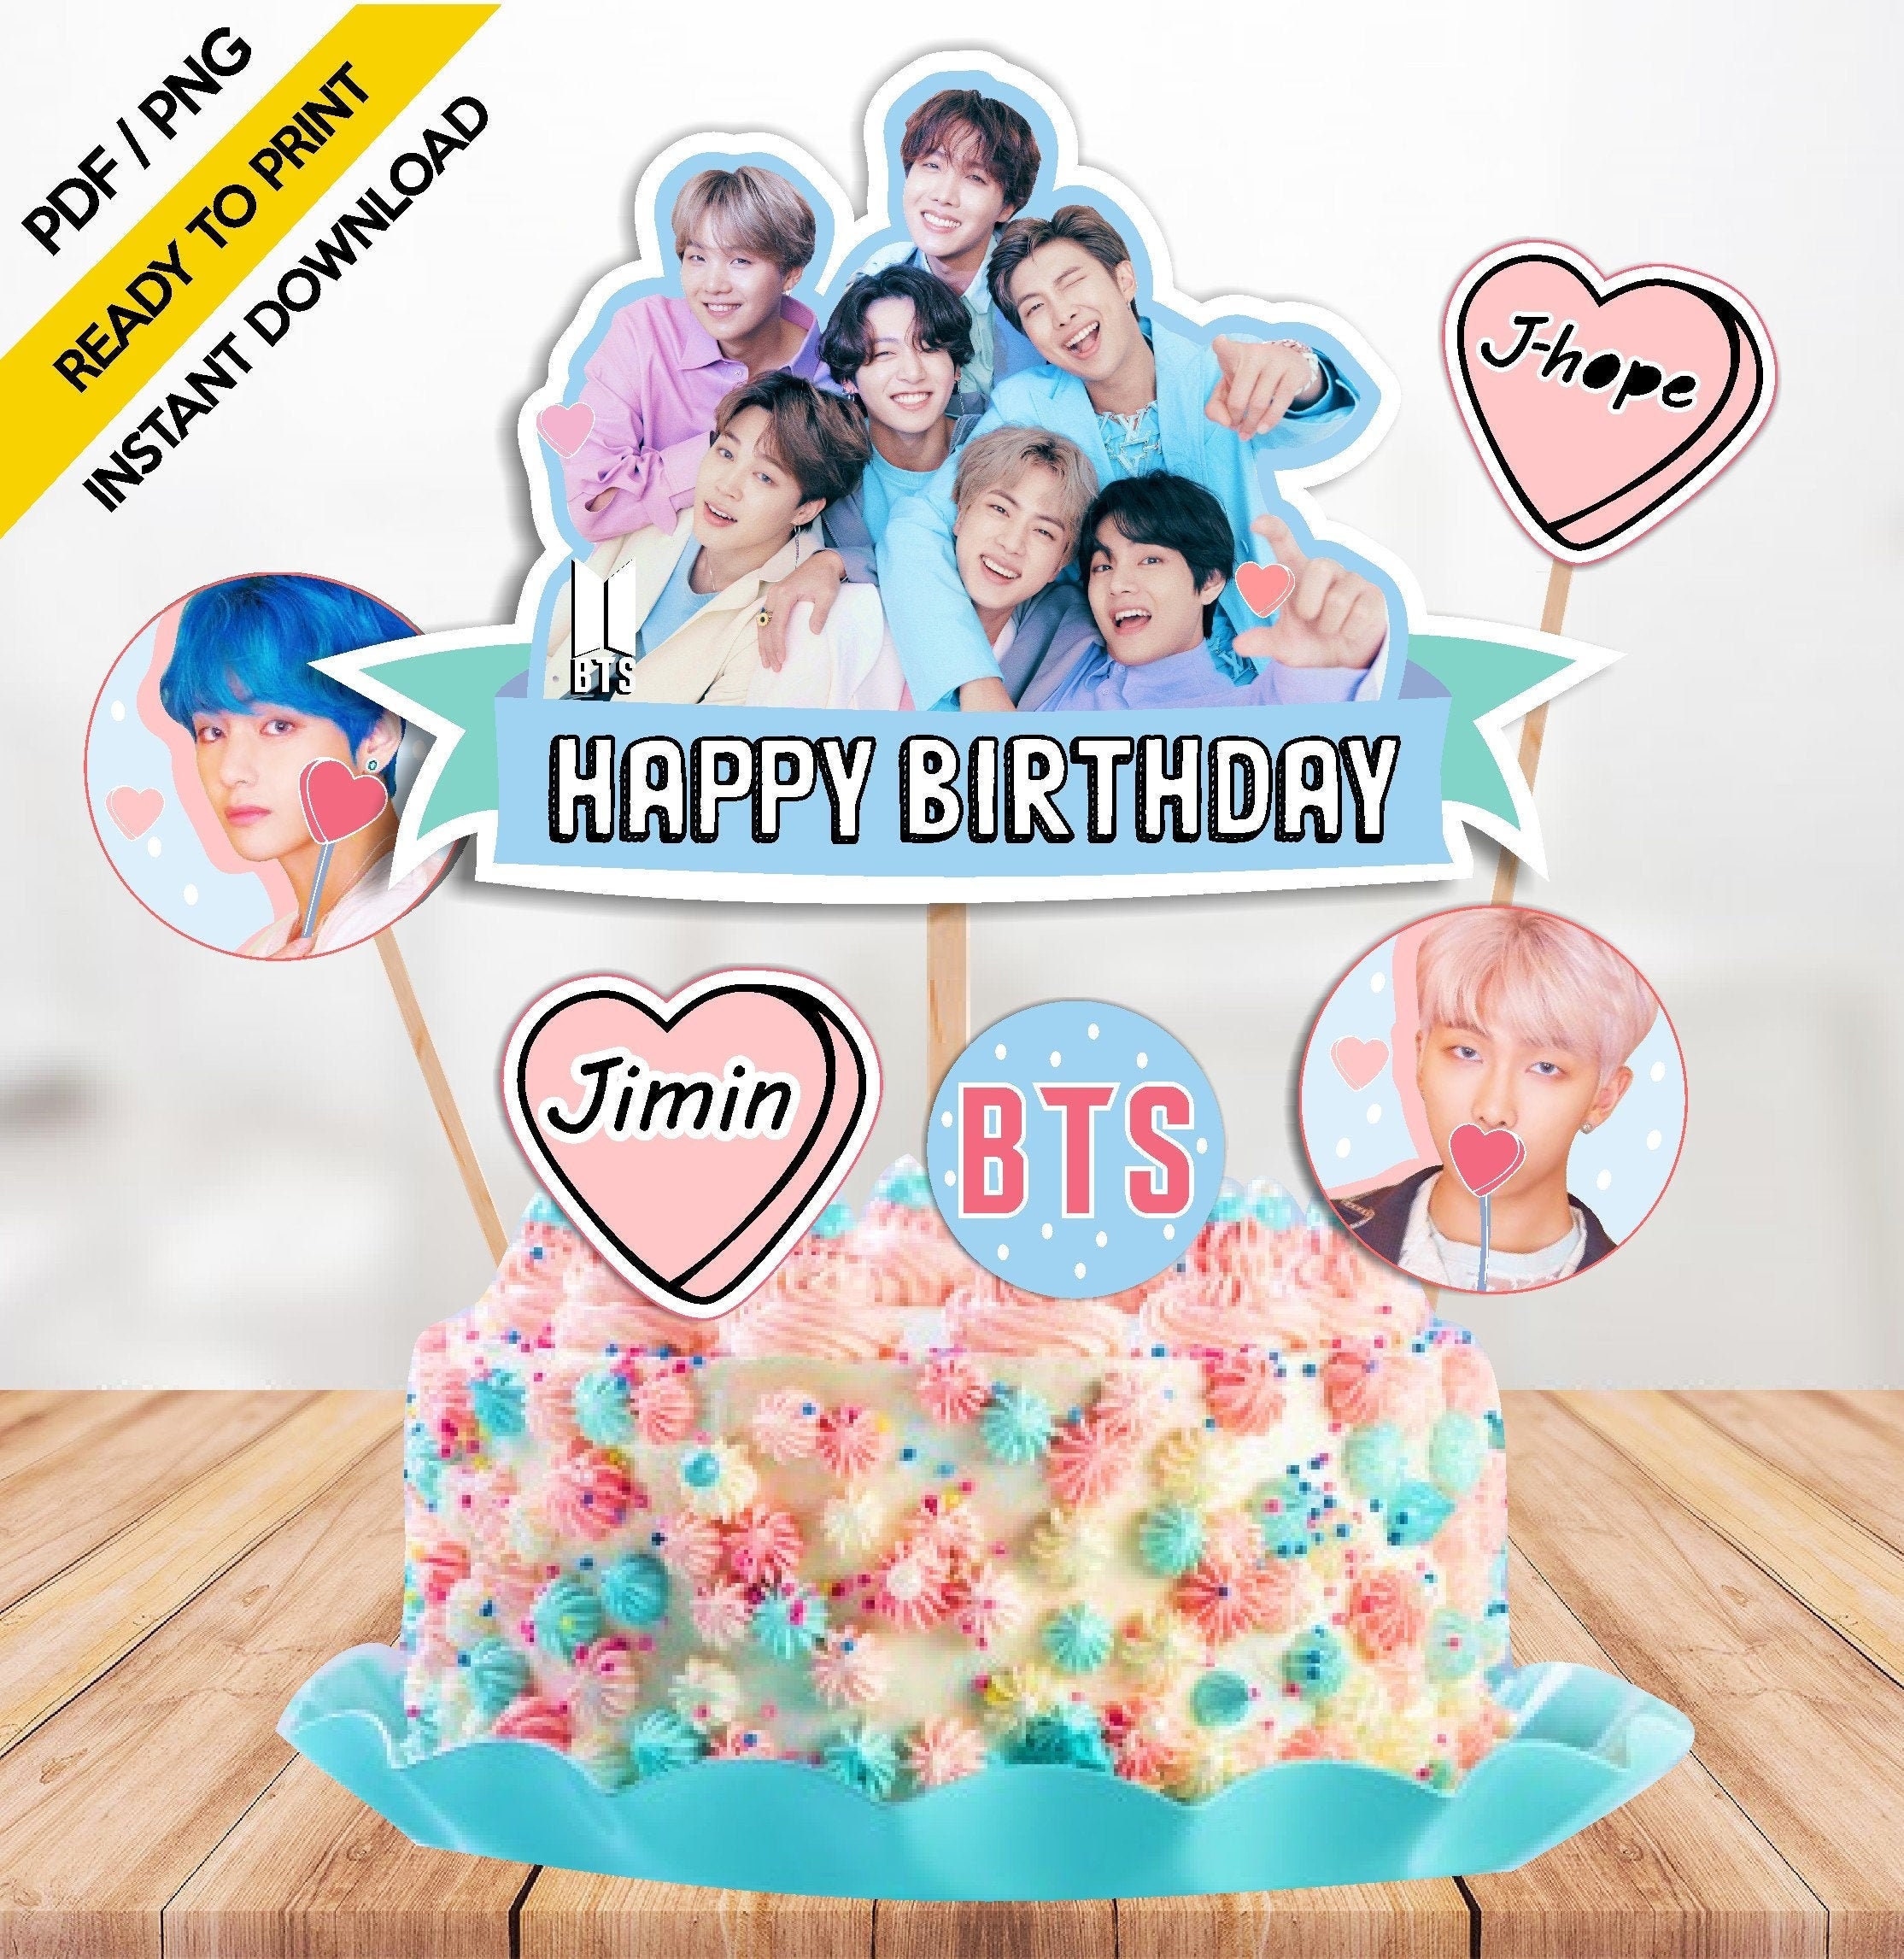 BTS Birthday Cake | Bts cake, Bts birthdays, Novelty birthday cakes